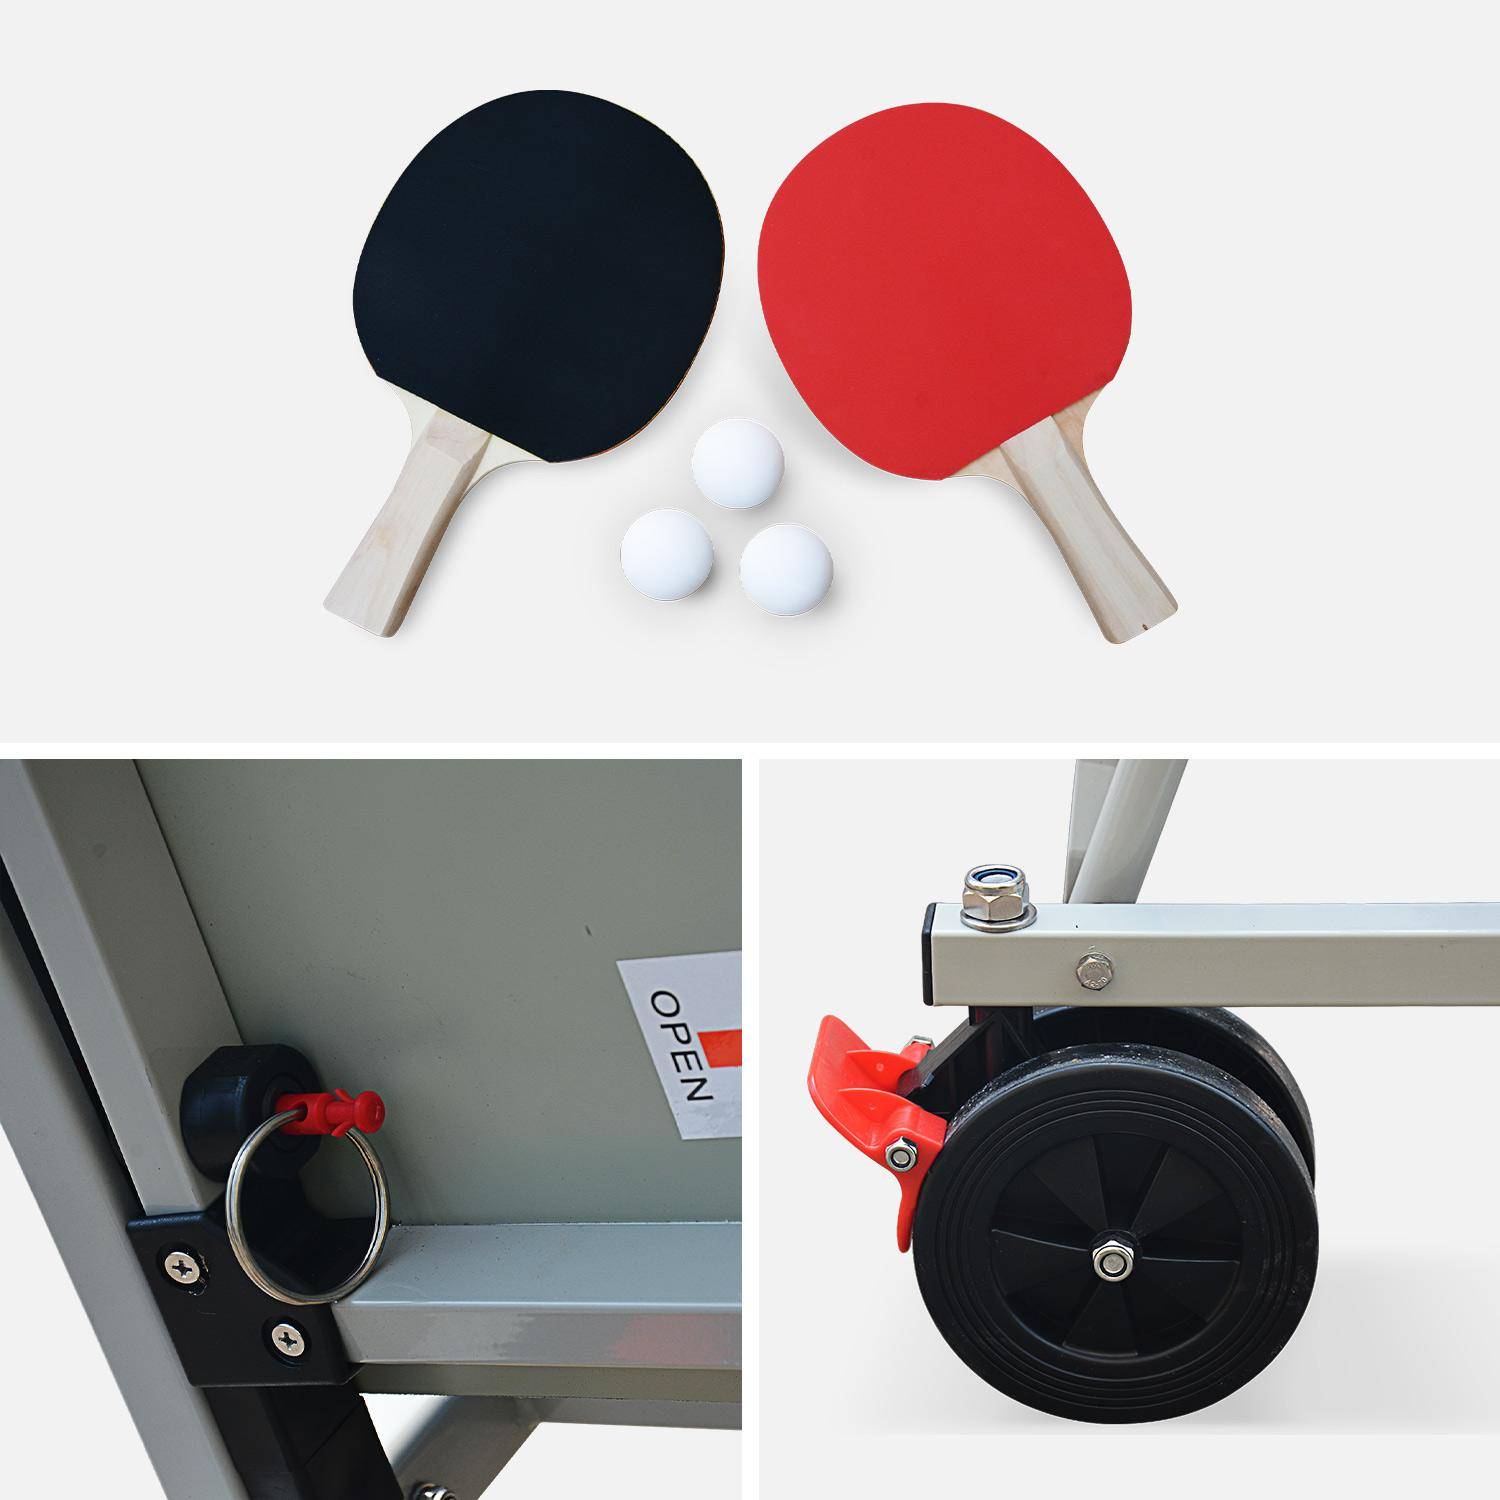 Table de ping pong OUTDOOR bleue, avec 2 raquettes et 3 balles, pour utilisation extérieure, sport tennis de table Photo5